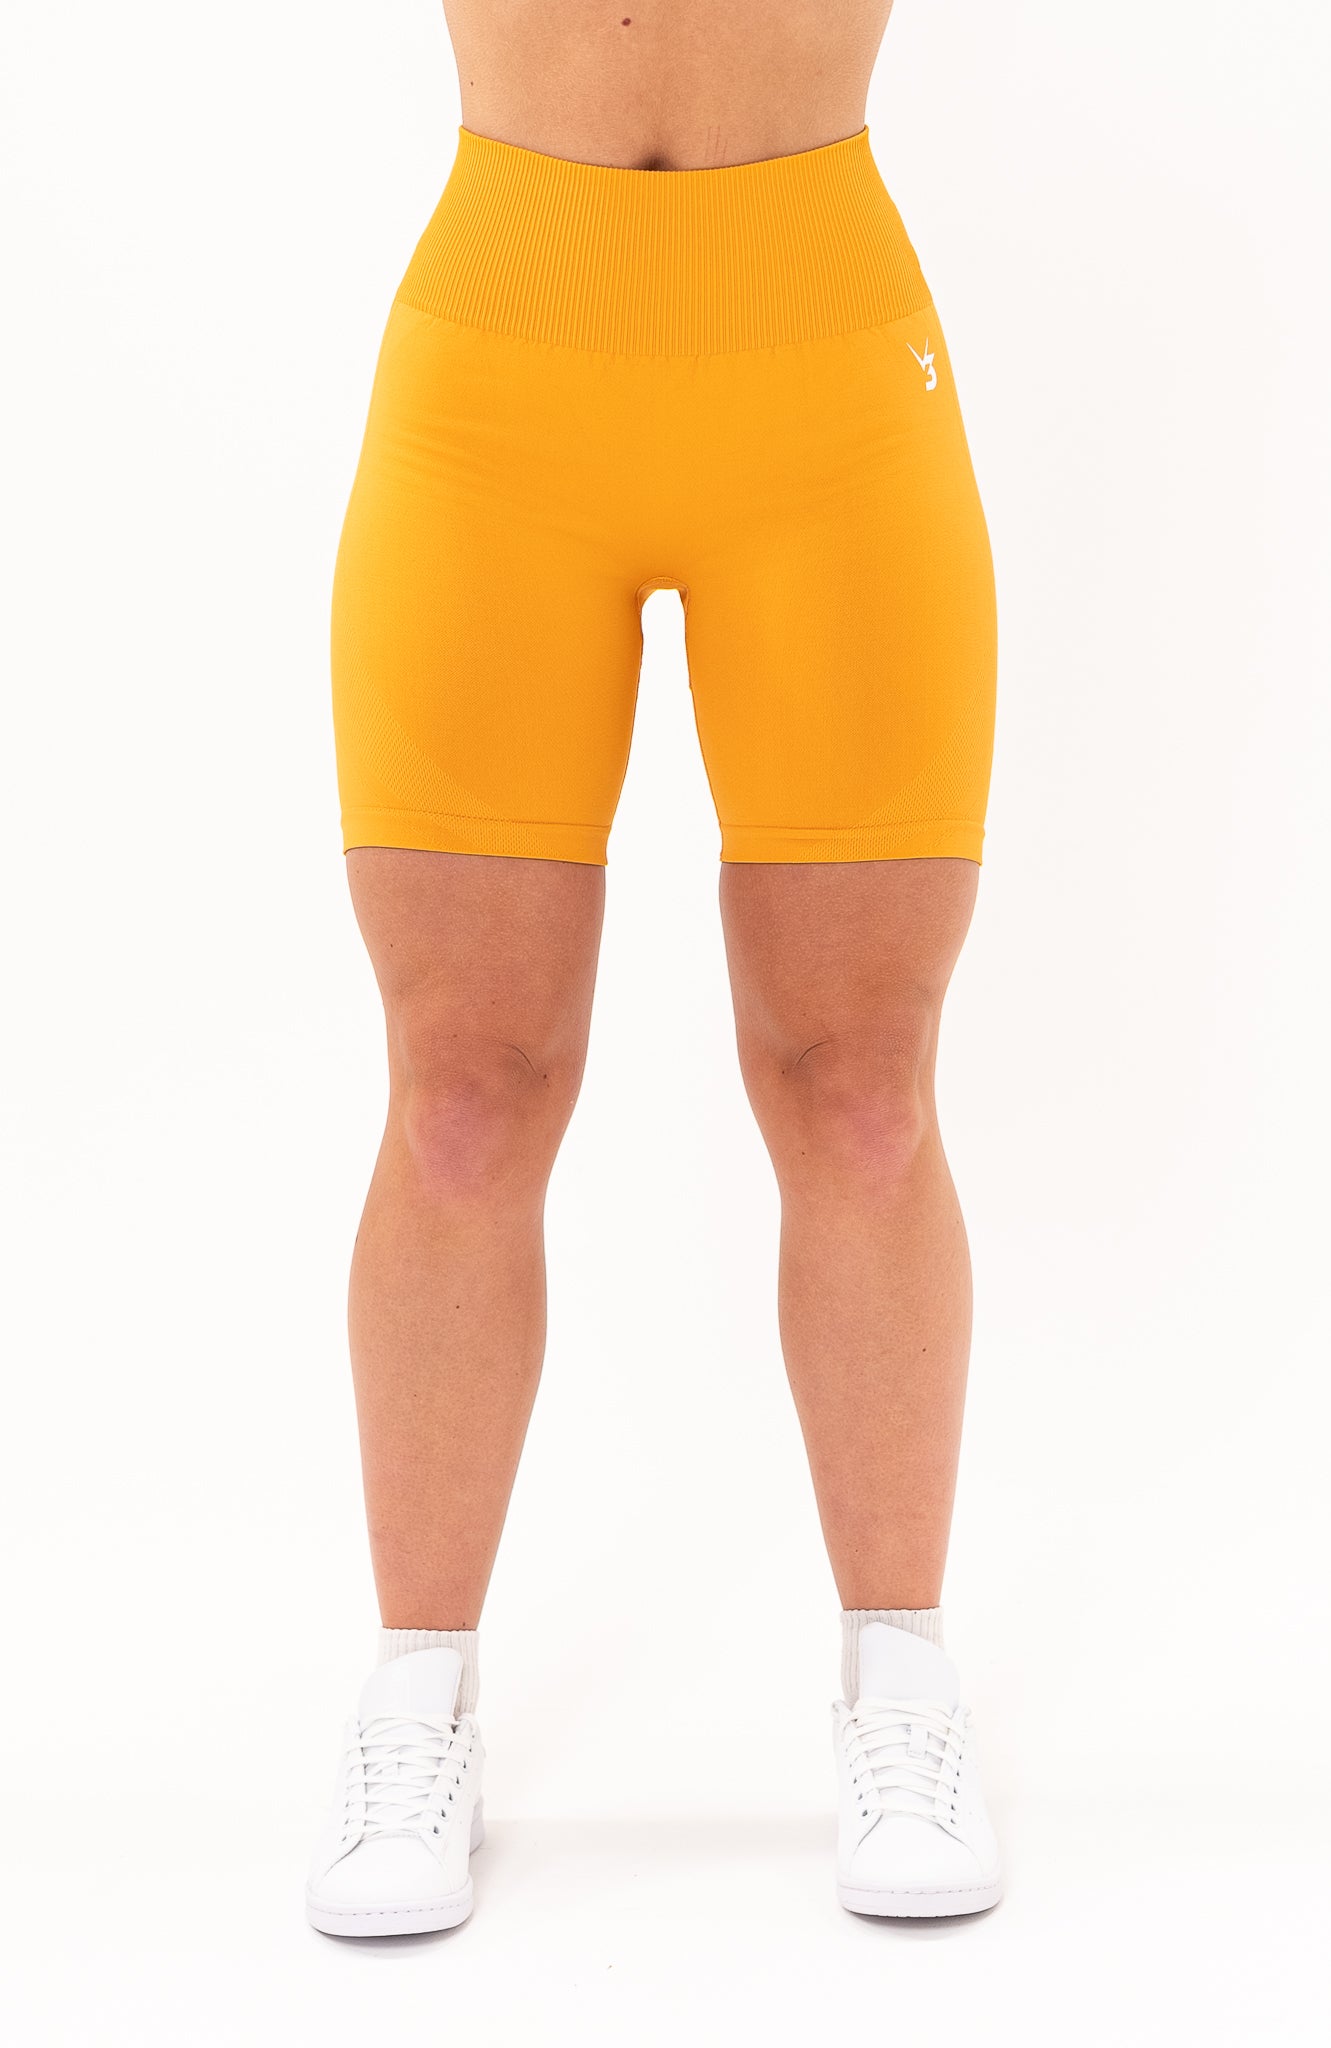 Limitless Seamless Shorts - Orange 